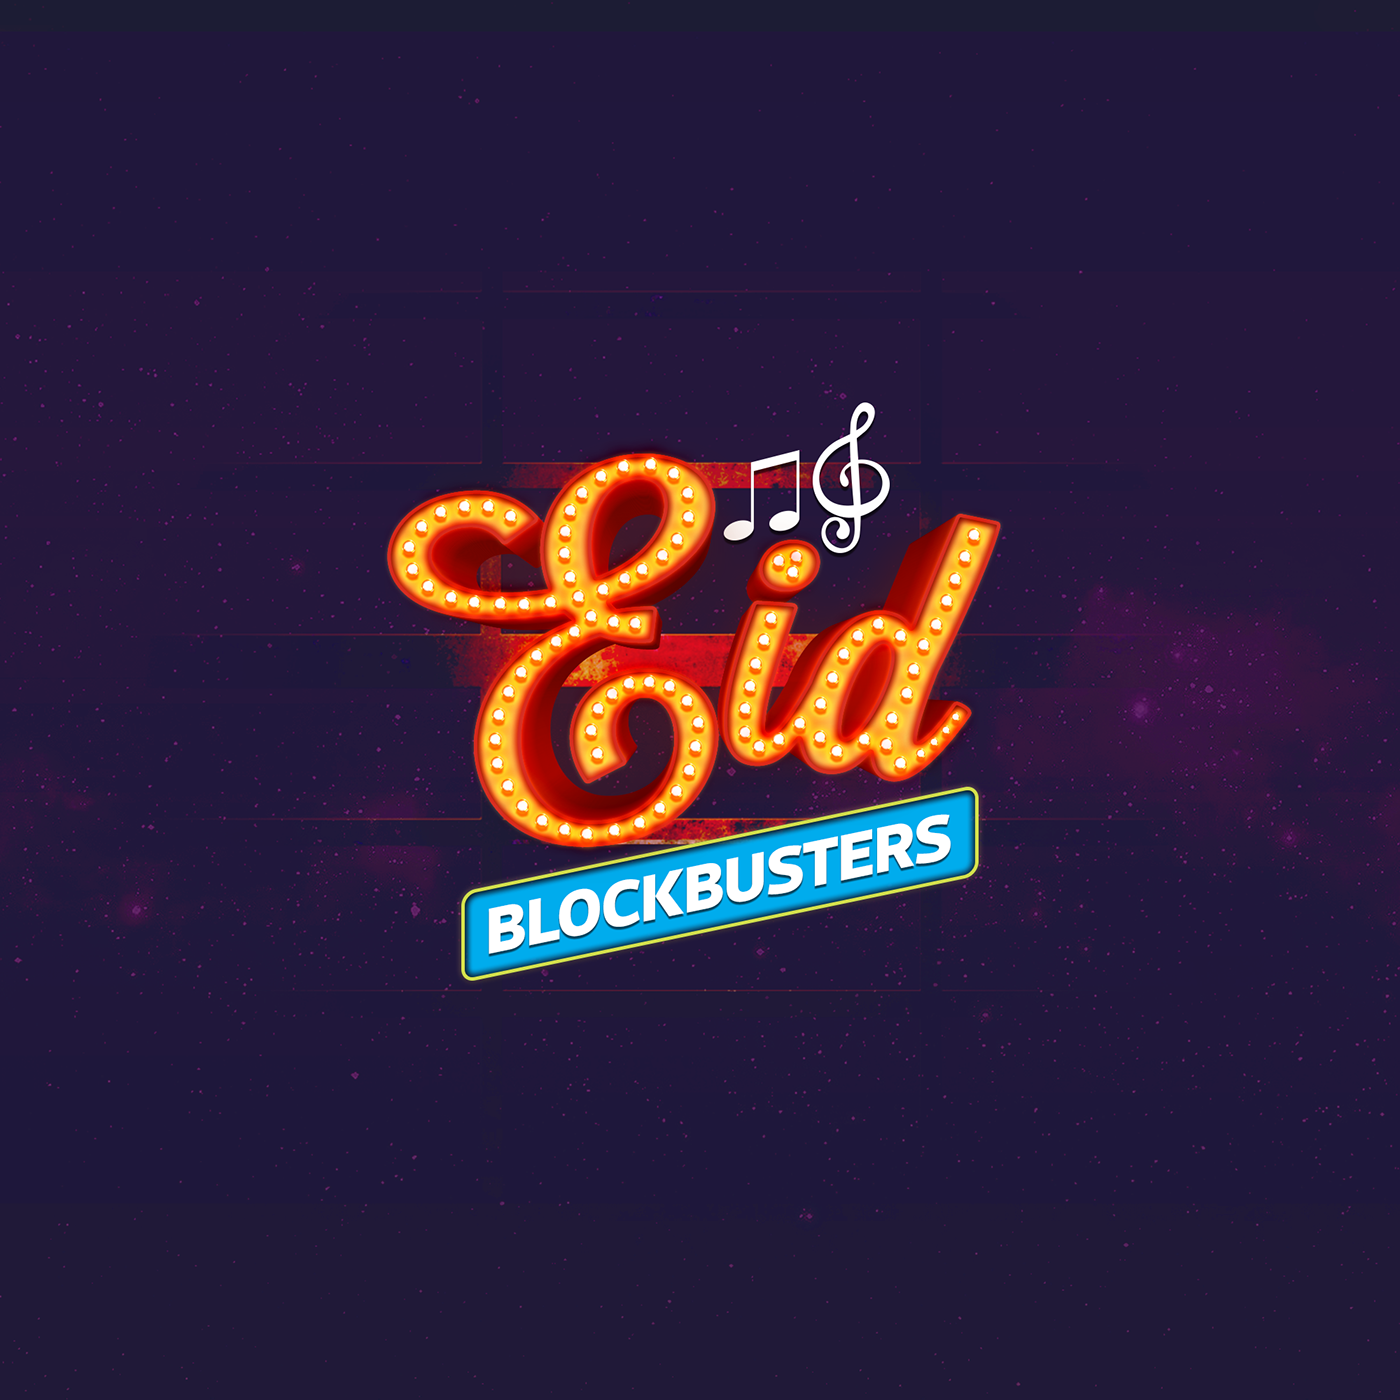 Eid campaign GP Music Eid Blockbusters Eid Blockbusters 2019 Eid blockbusters music GP grameenphone Eid Music